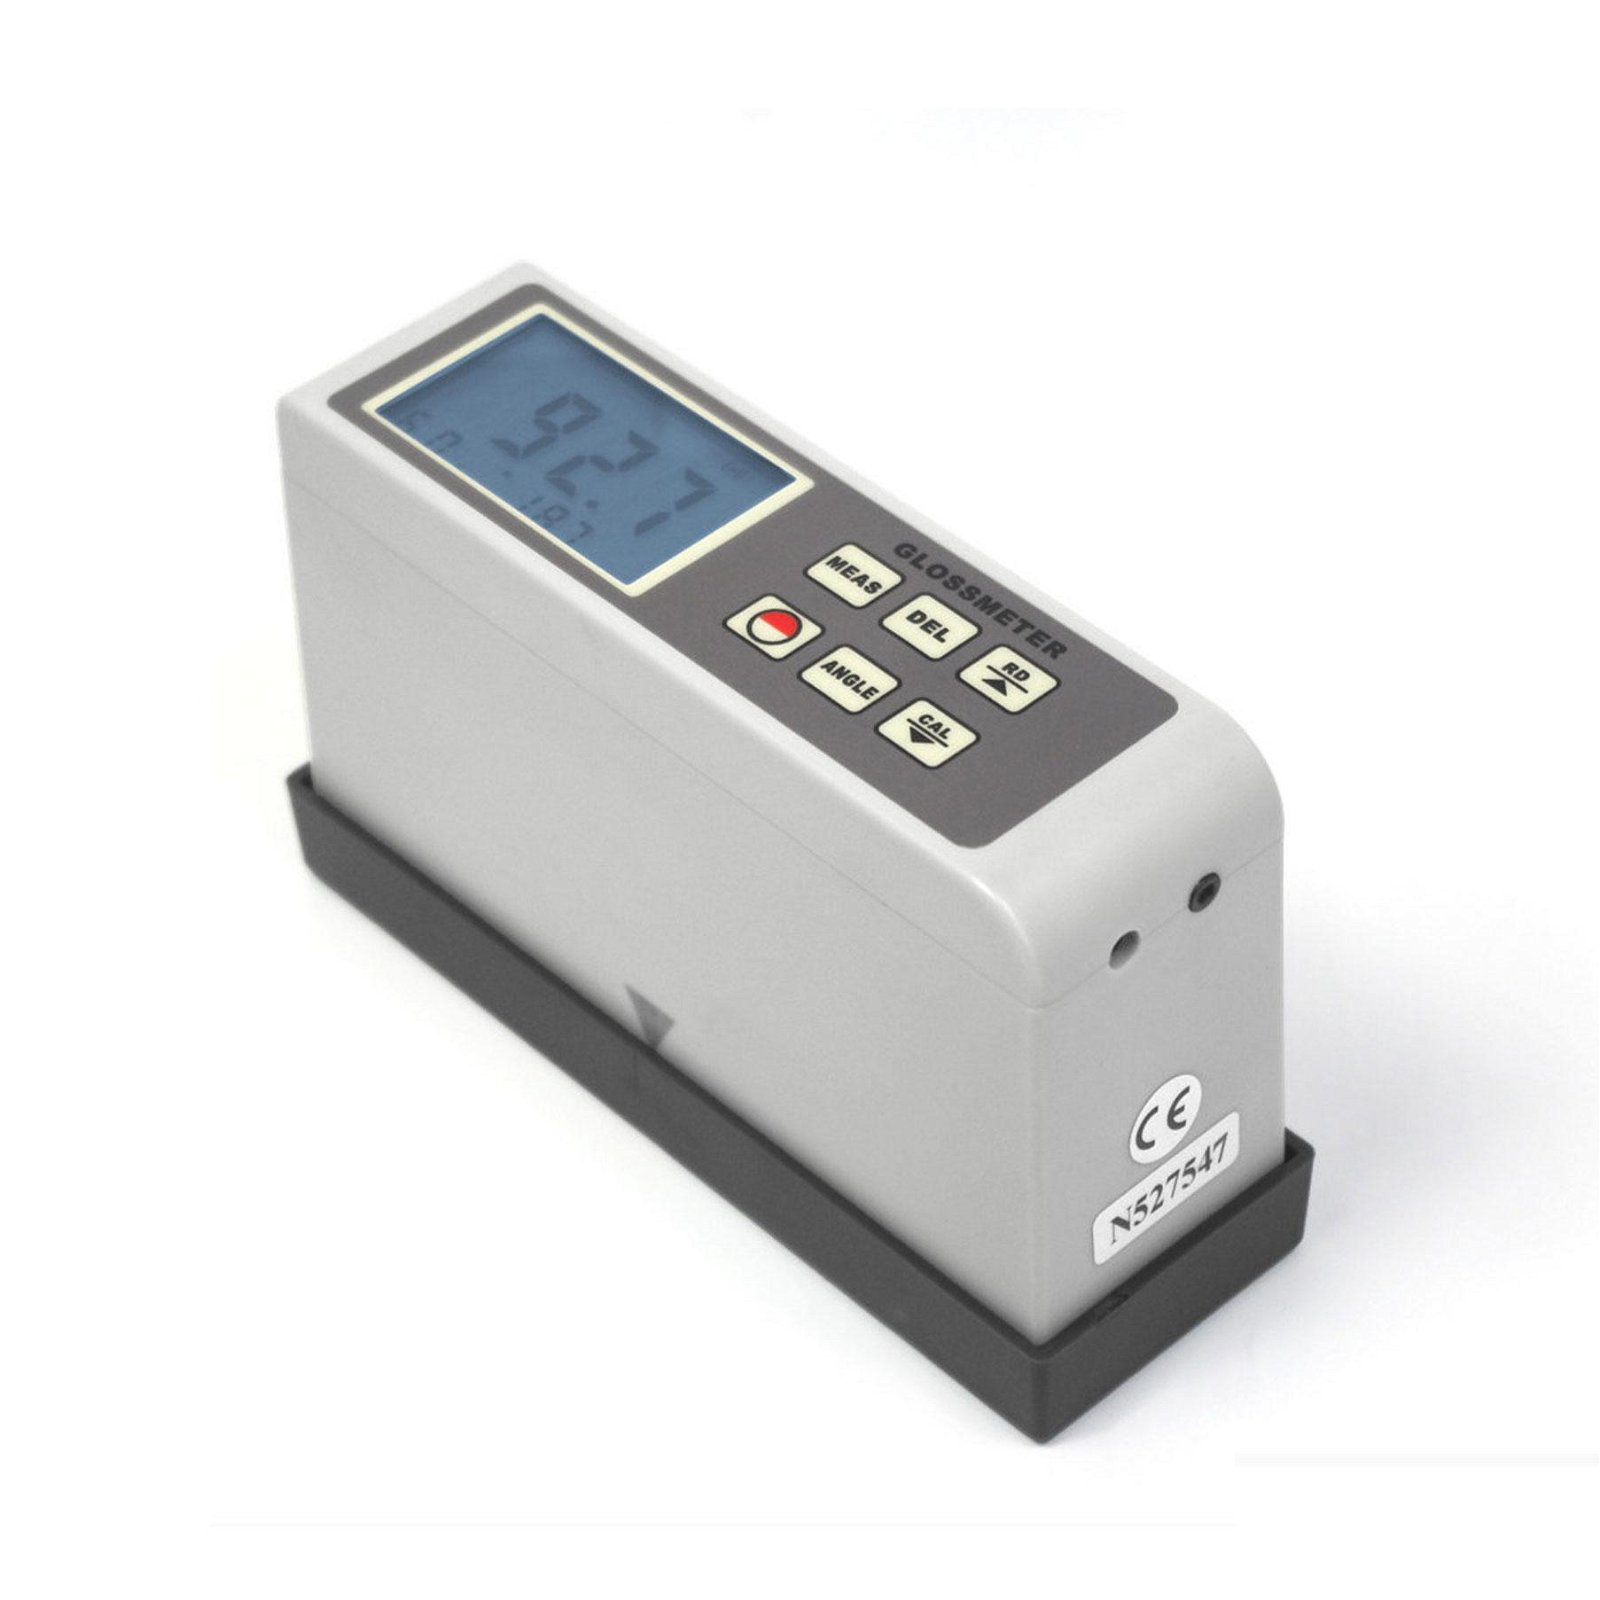 Portable Surface Gloss meter Tester AG-1268B 20 60 85 degree angle 0.1 ~ 200 GU 2